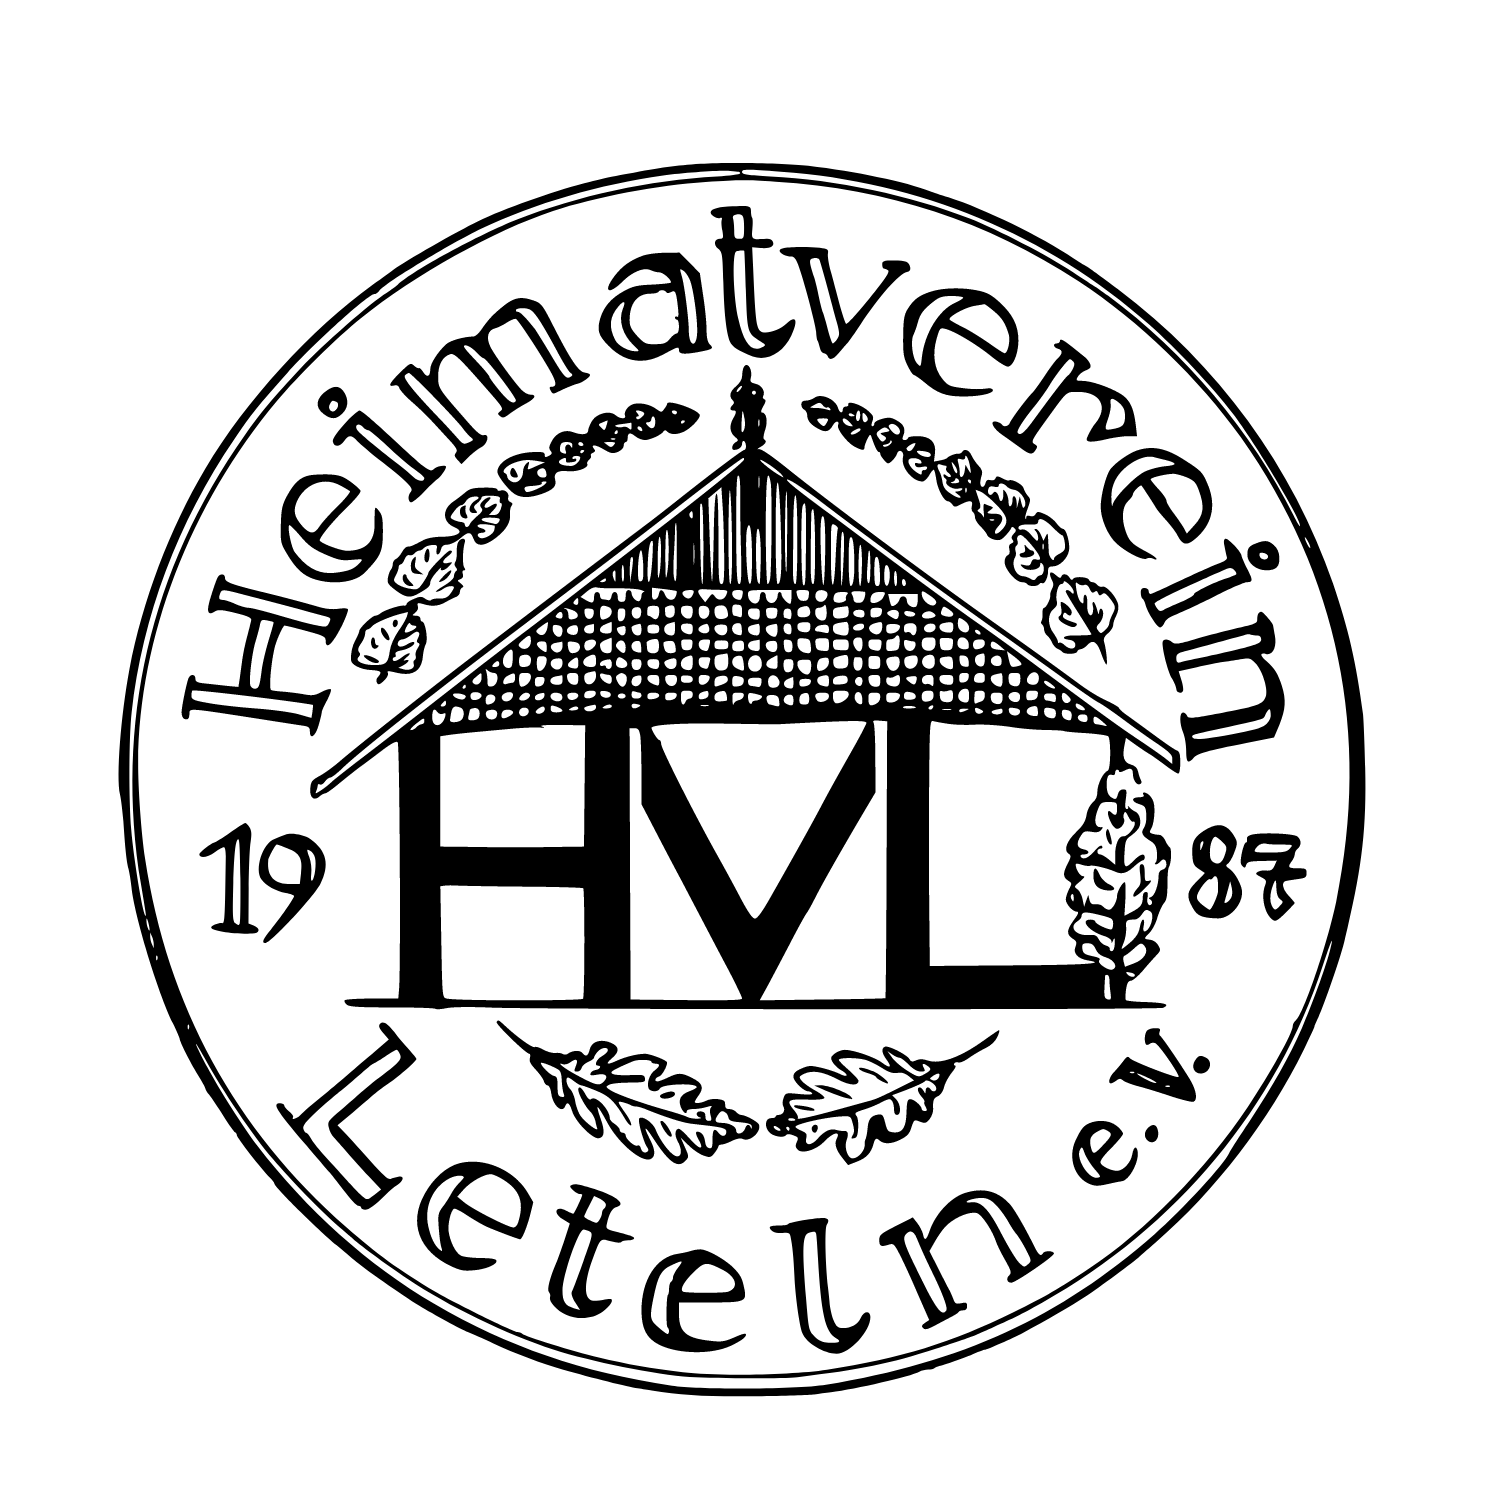 Heimatverein Leteln e.V.